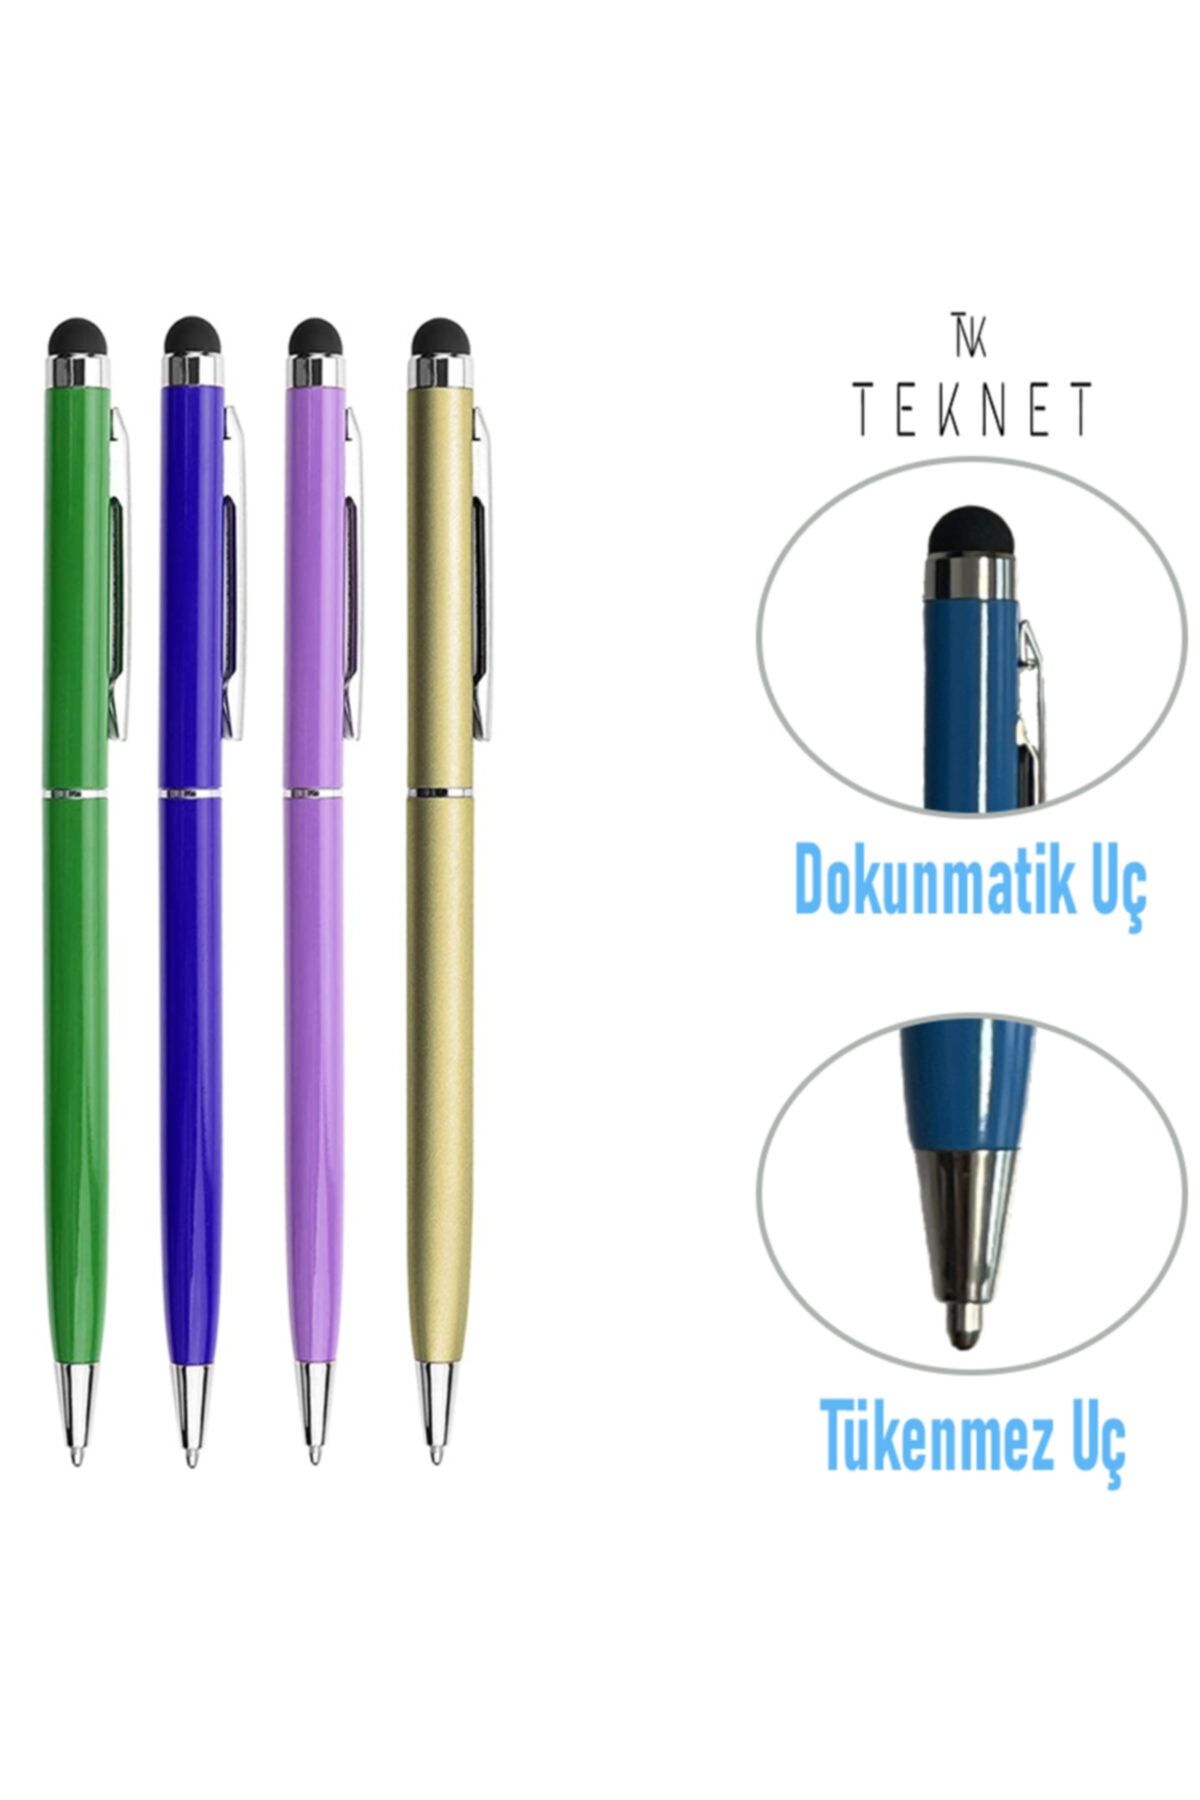 TEKNETSTORE 4'lü Paket Dokunmatik Kalem Tablet Telefon Için Çizim & Yazı Kalemi 2 In 1 Tükenmez Uçlu Tam Uyumlu